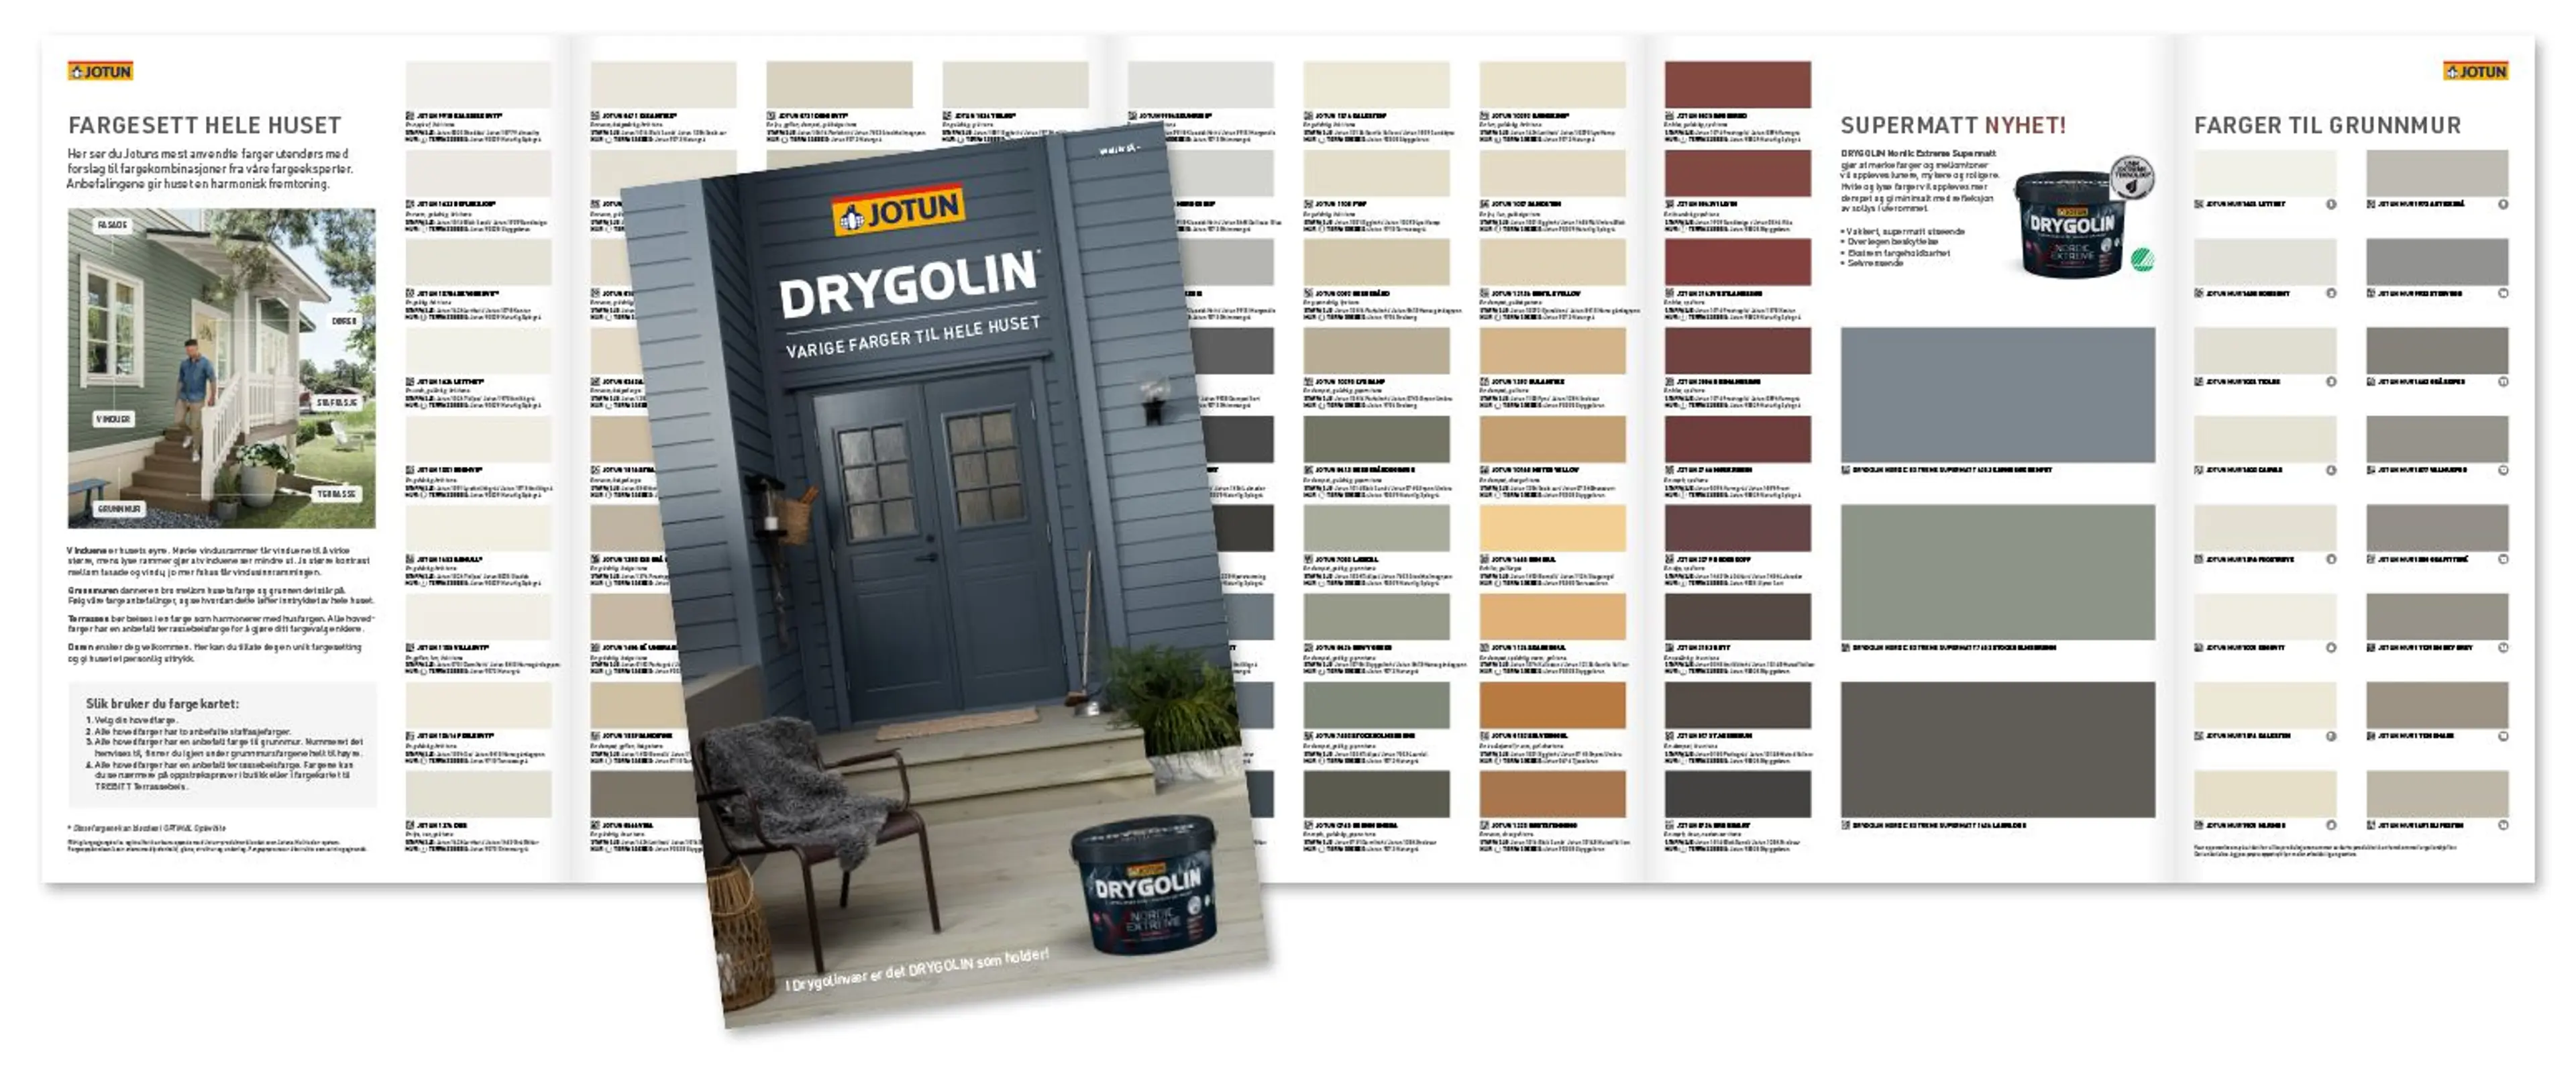 Jotuns nye Drygolin-fargekart med alle Jotuns utefarger med anbefalte kombinasjonsfarger for hele huset, inkludert grunnmur og terrassebeis farger.